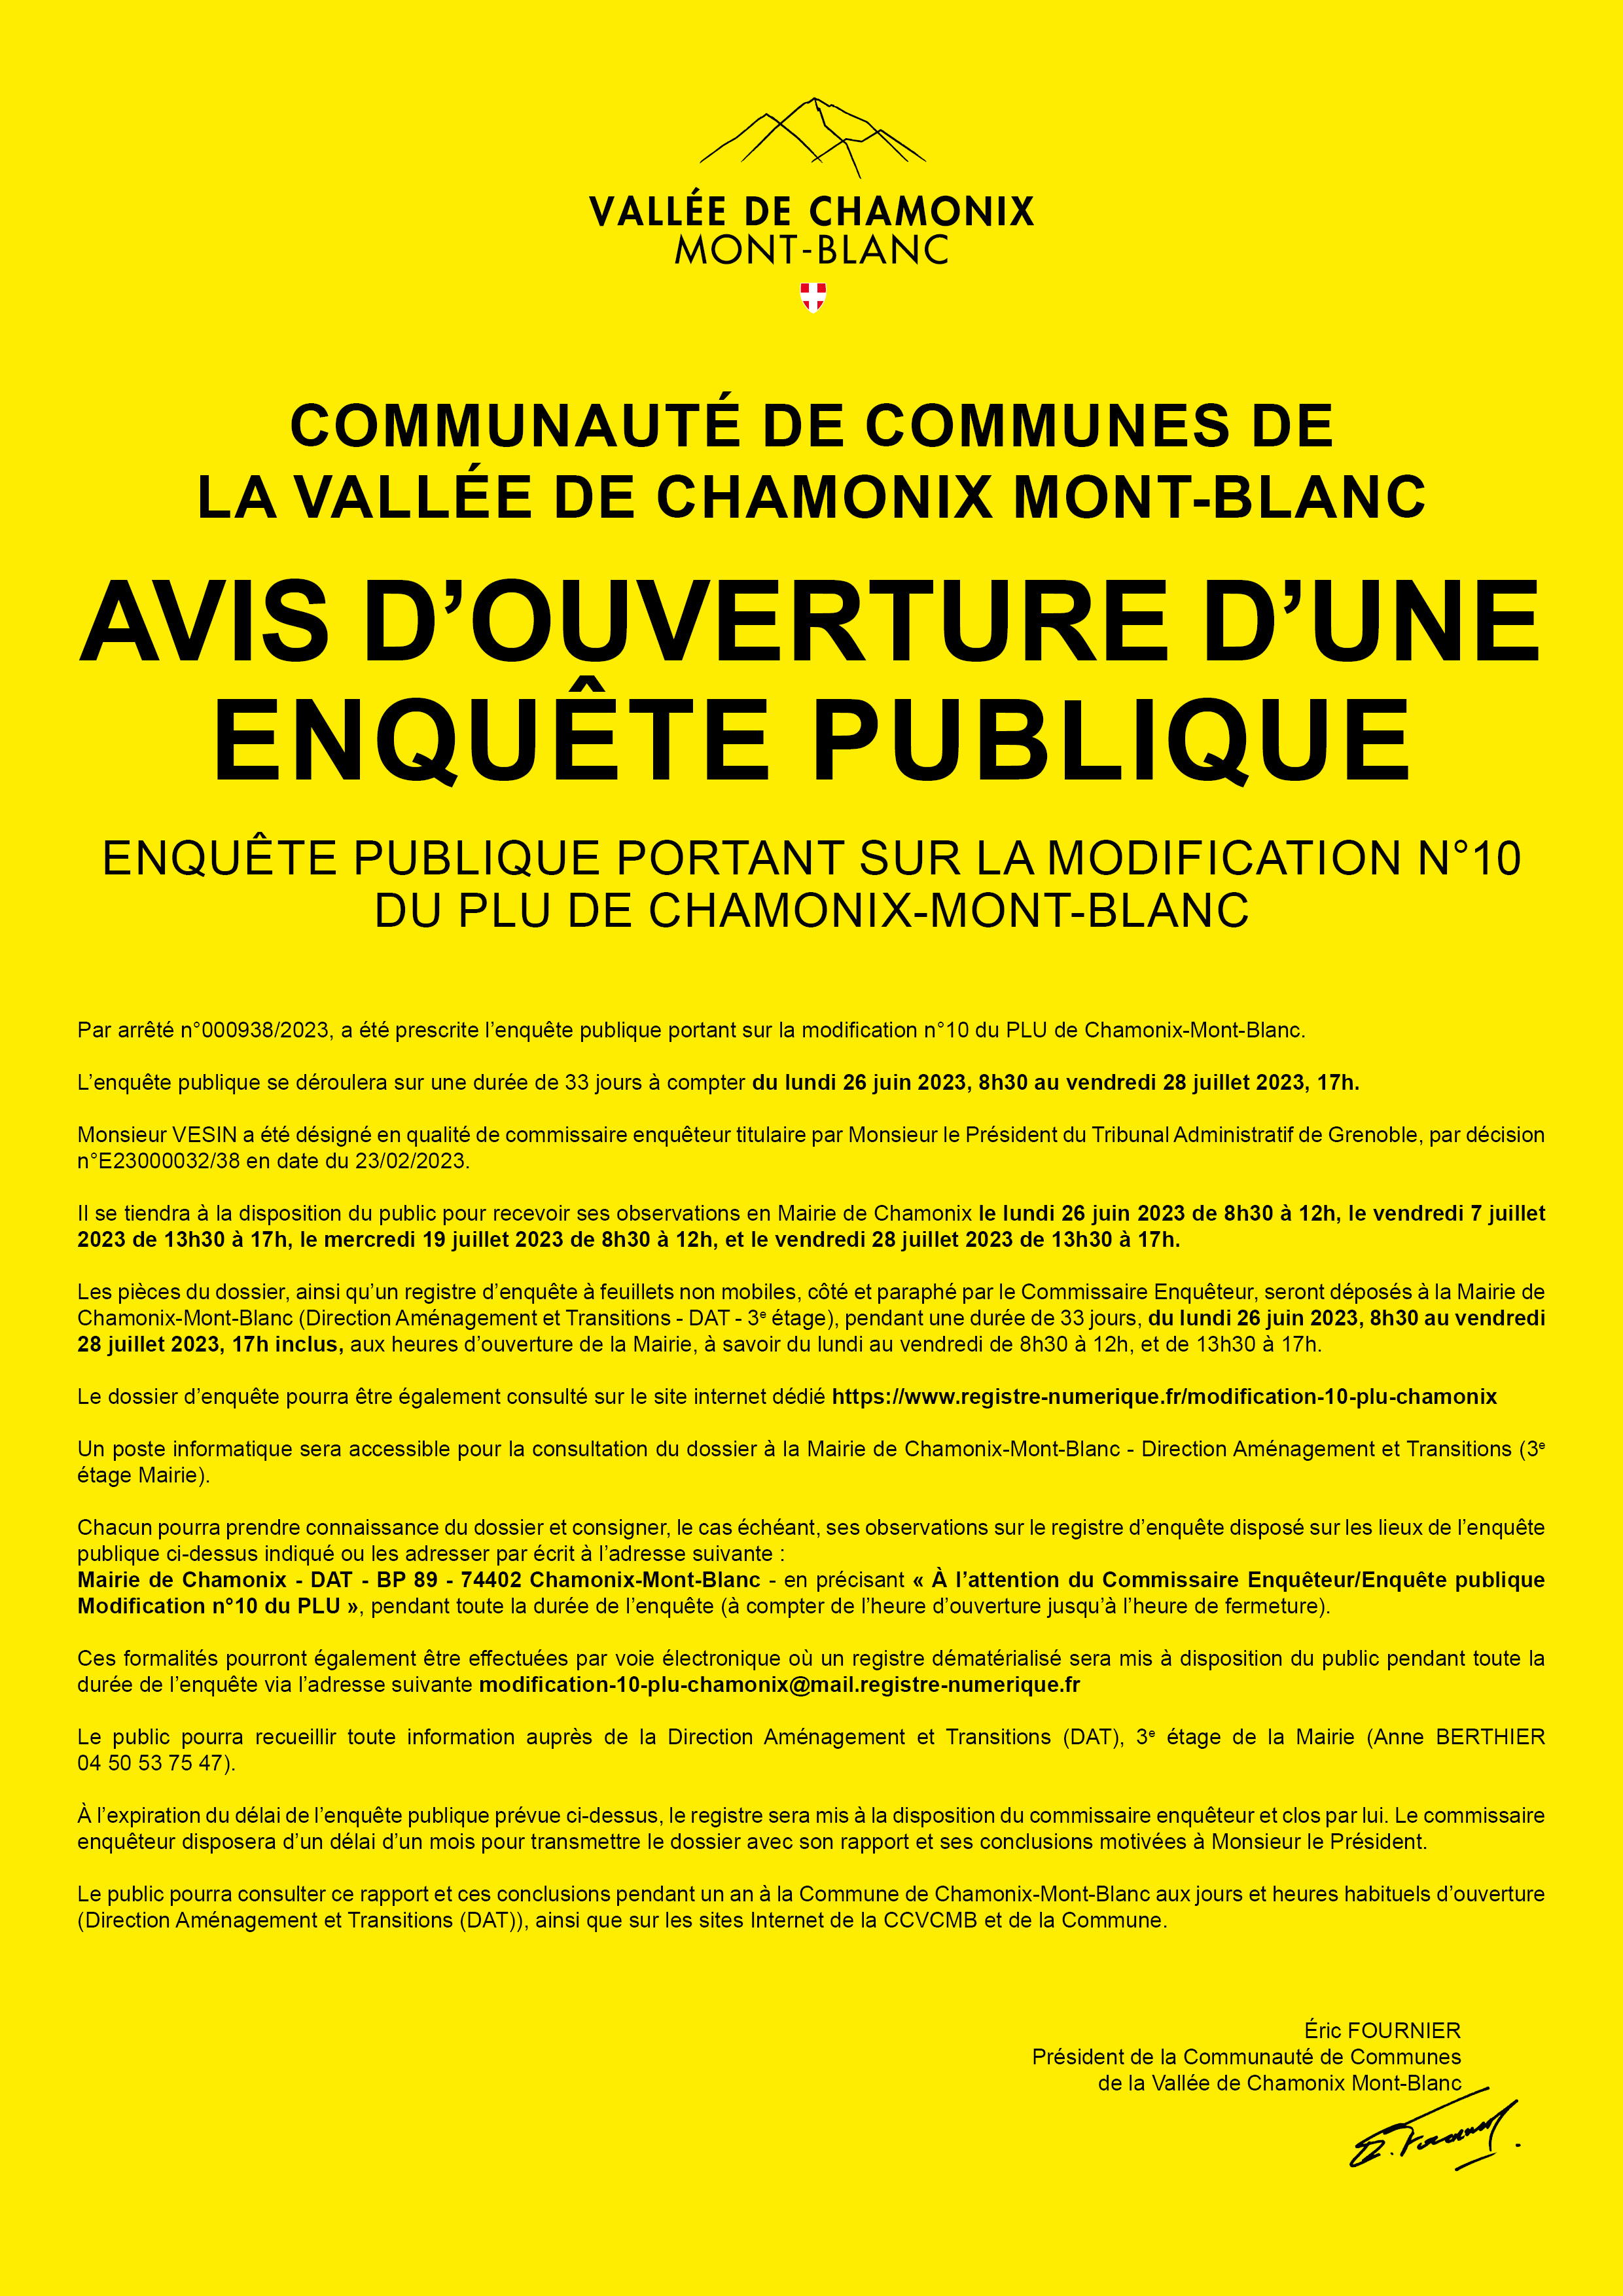 Enquête publique du lundi 26 juin au vendredi 28 juillet 2023 sur la modification 0°10 du PLU de Chamonix-Mont-Blanc